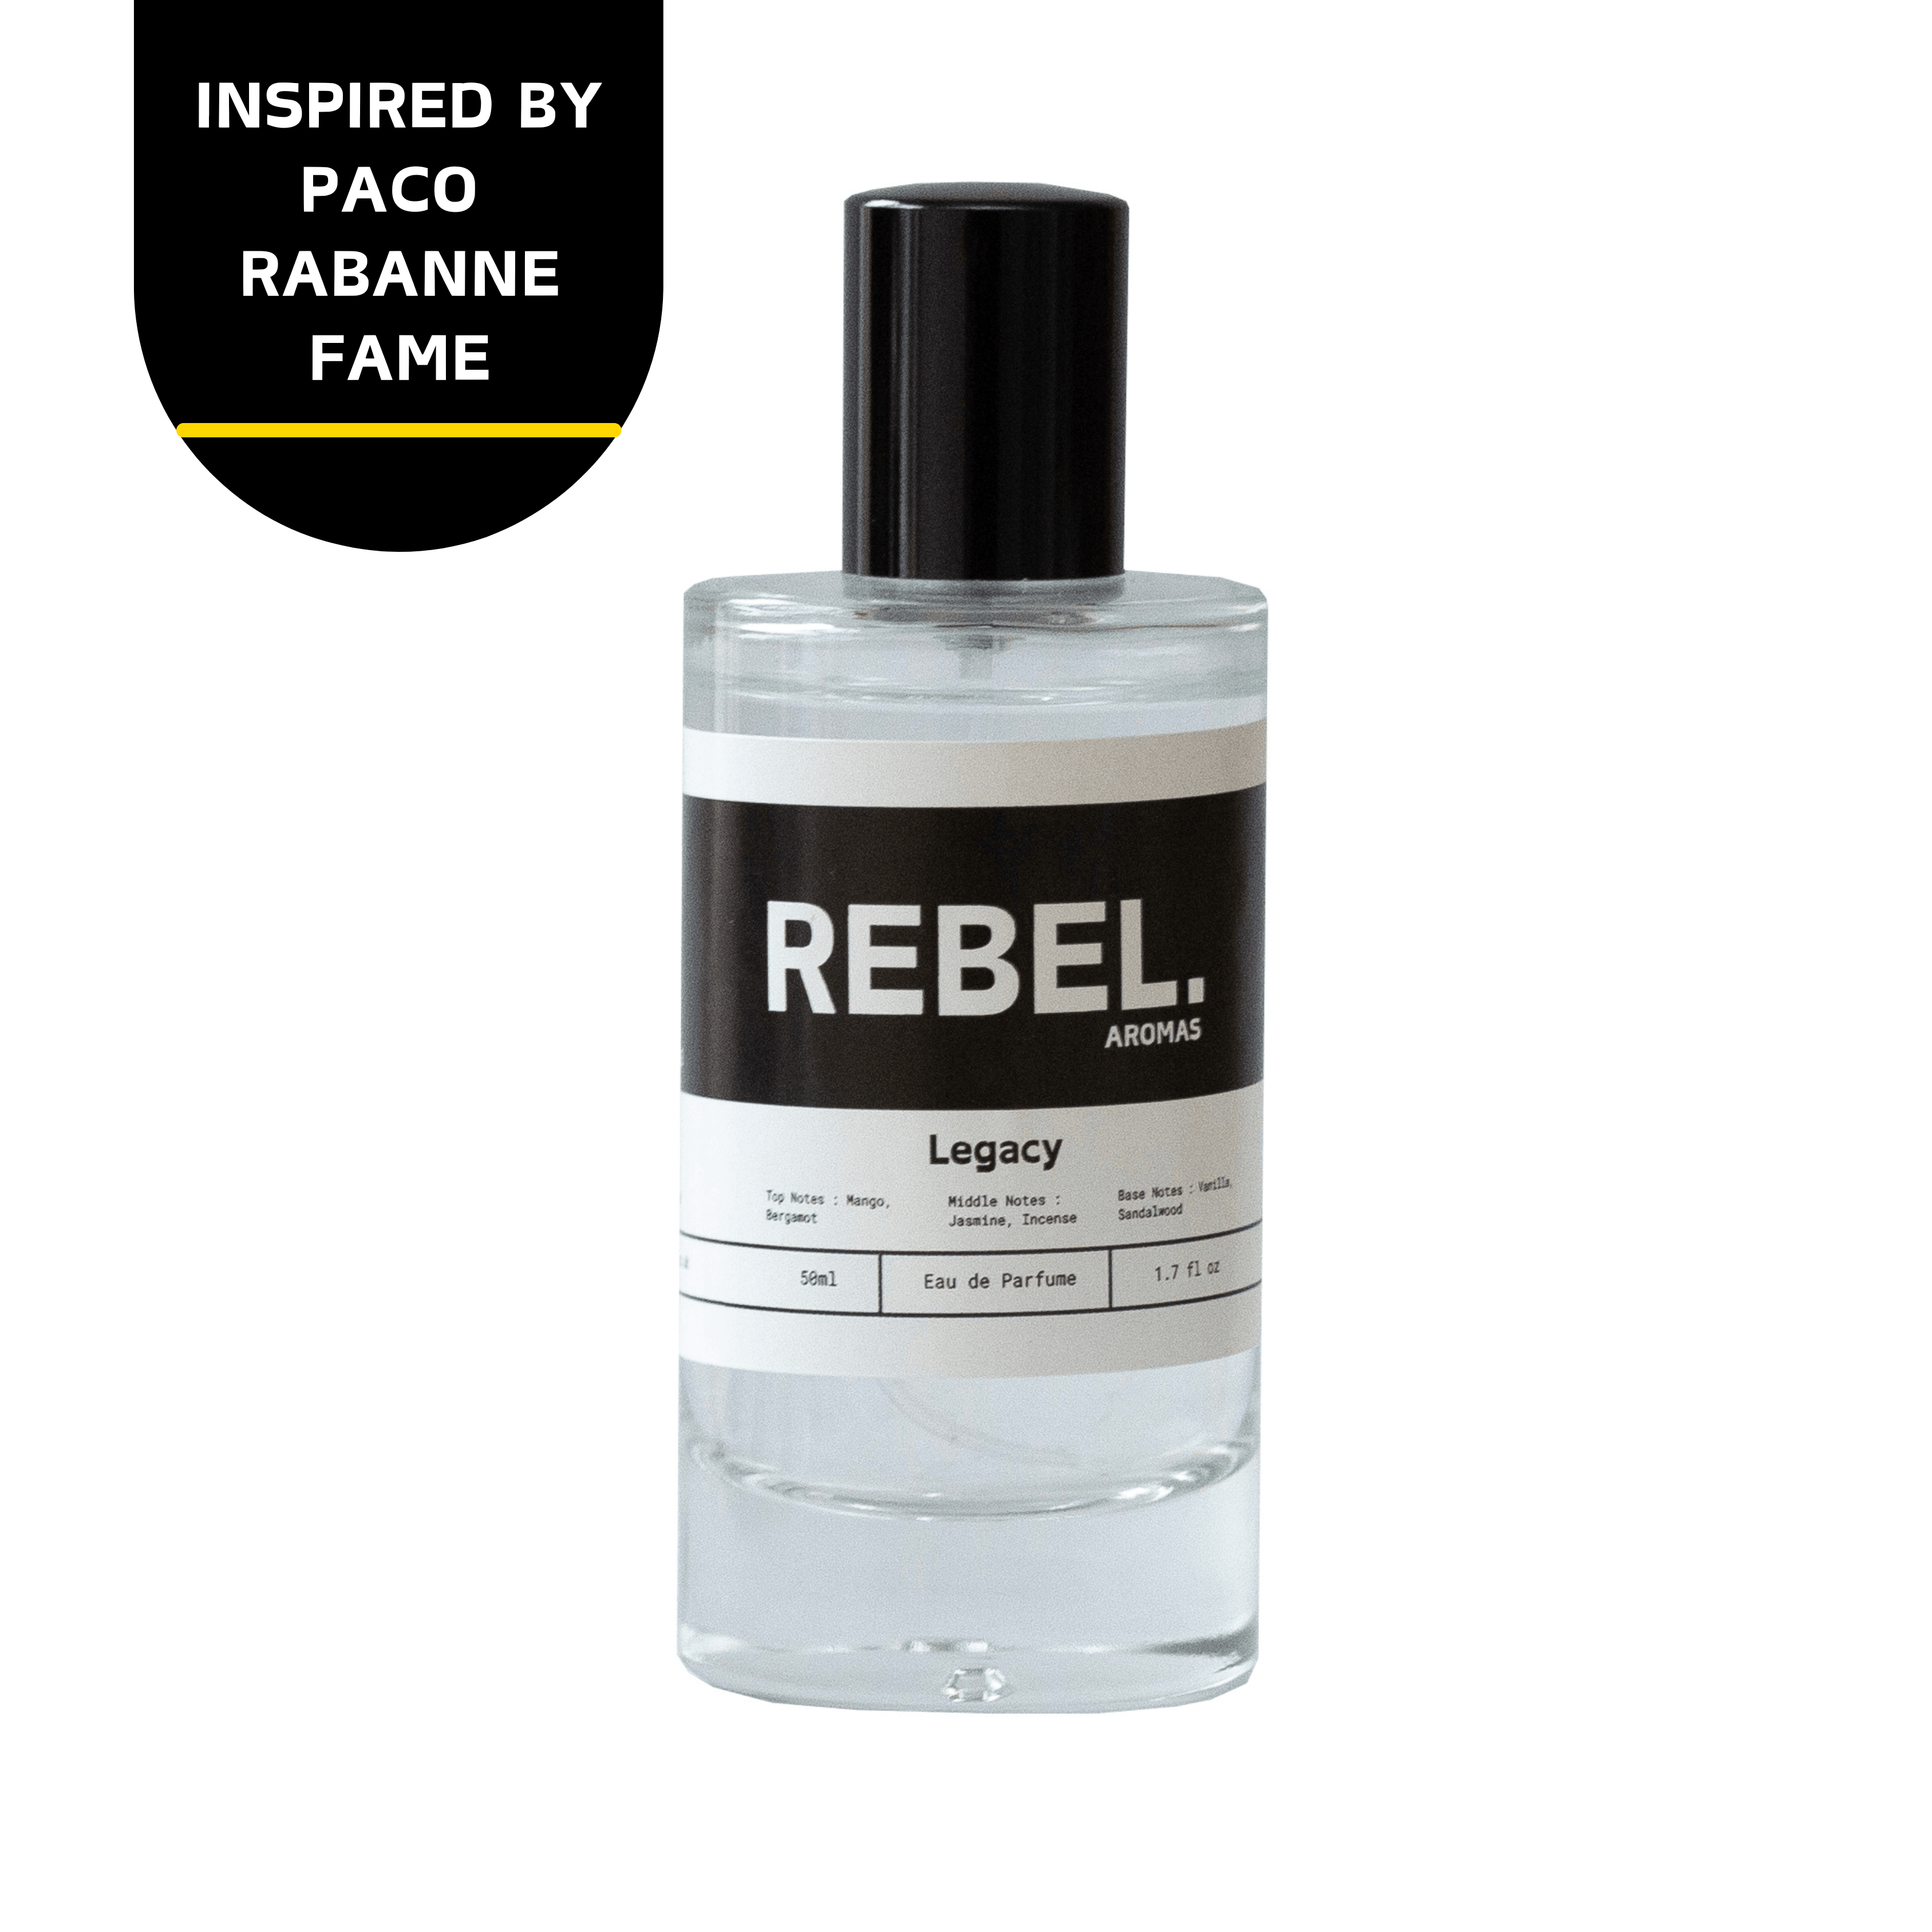 Legacy - Rebel Aromas